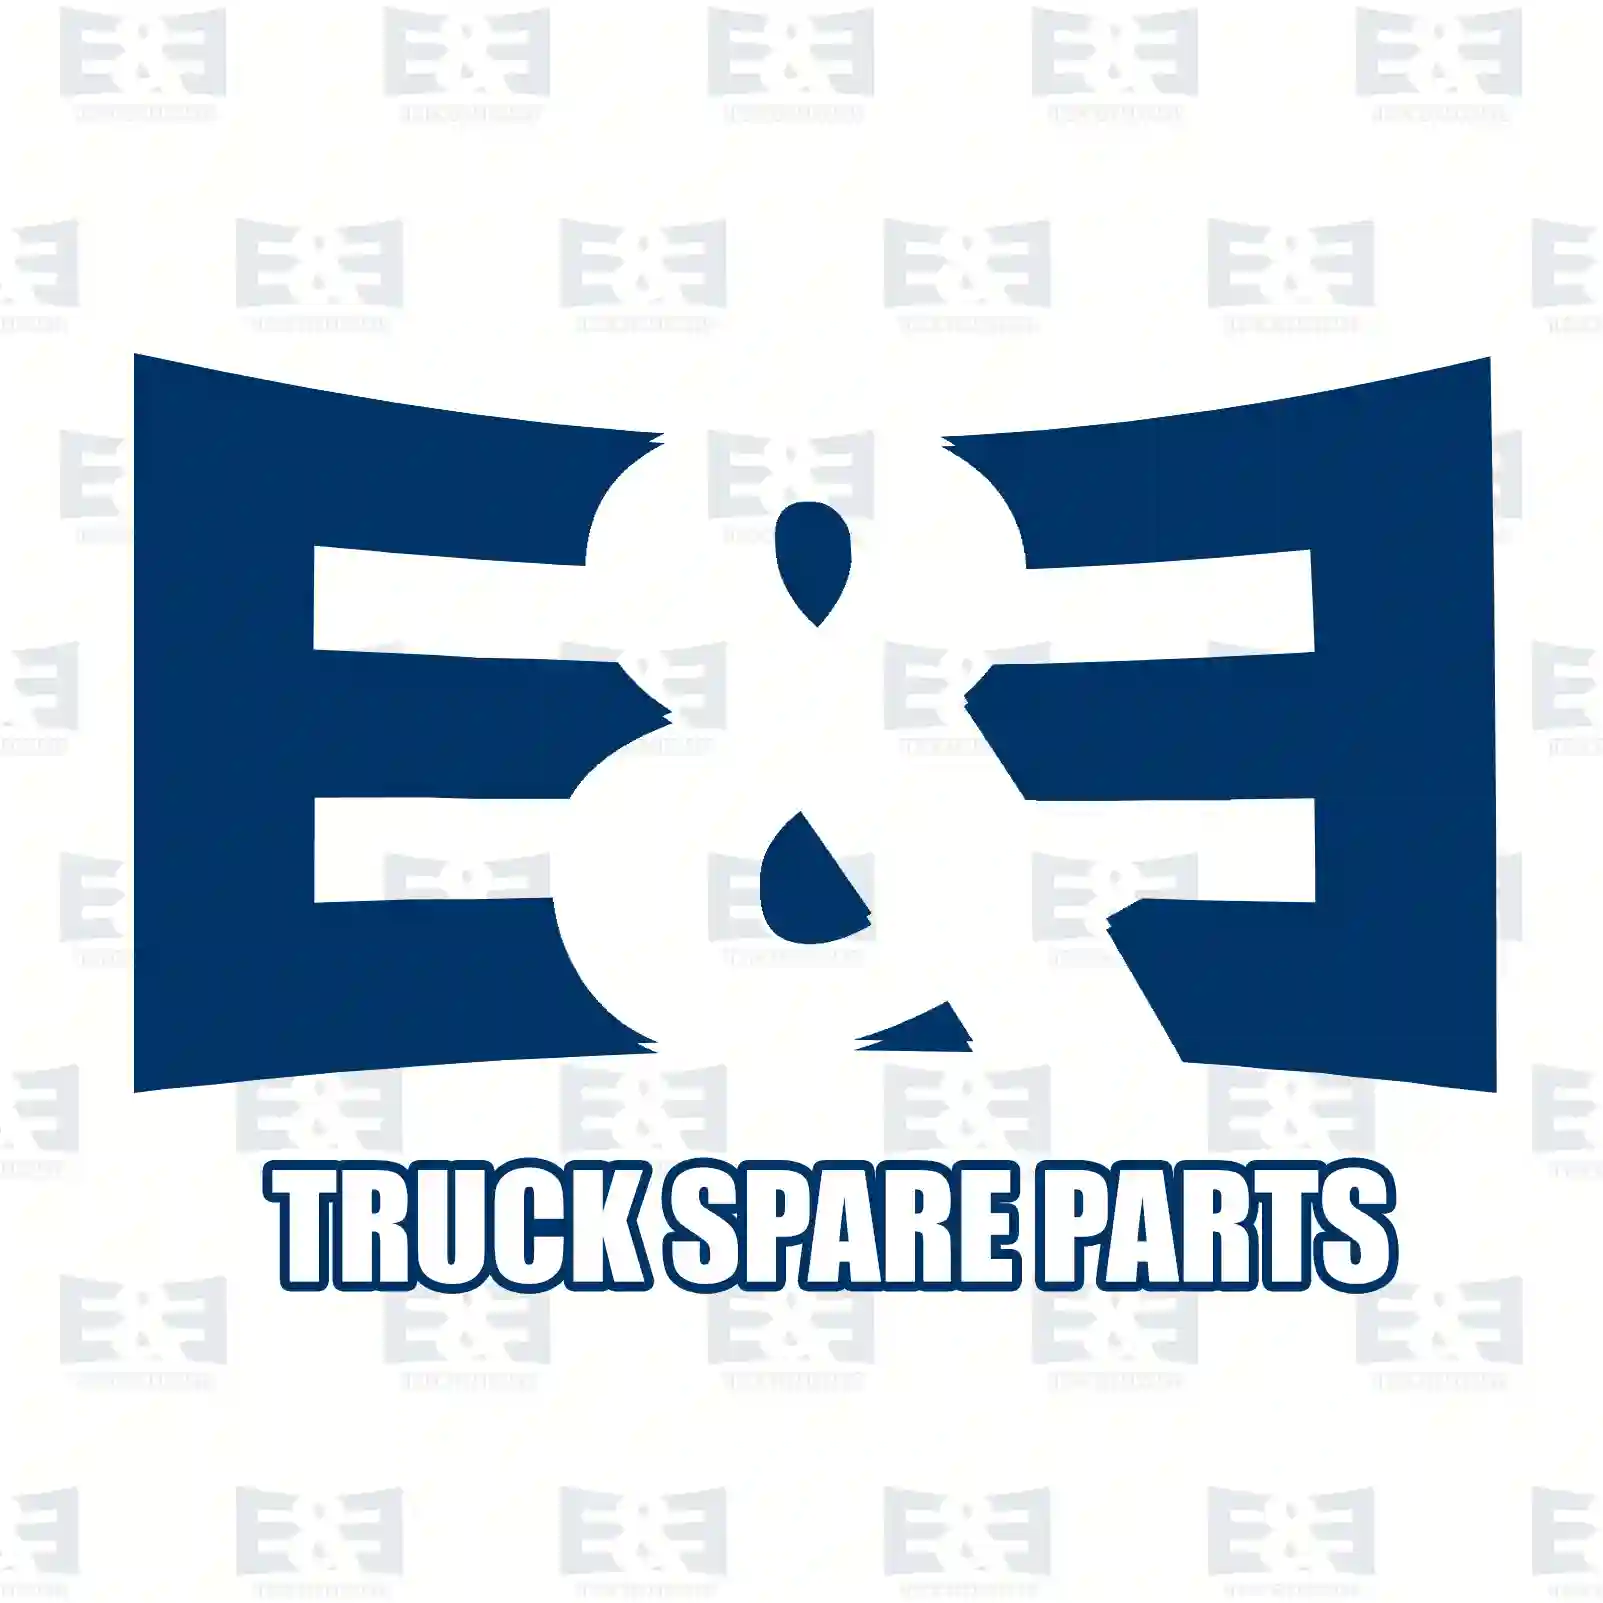 Fan, 2E2202269, 504154349 ||  2E2202269 E&E Truck Spare Parts | Truck Spare Parts, Auotomotive Spare Parts Fan, 2E2202269, 504154349 ||  2E2202269 E&E Truck Spare Parts | Truck Spare Parts, Auotomotive Spare Parts